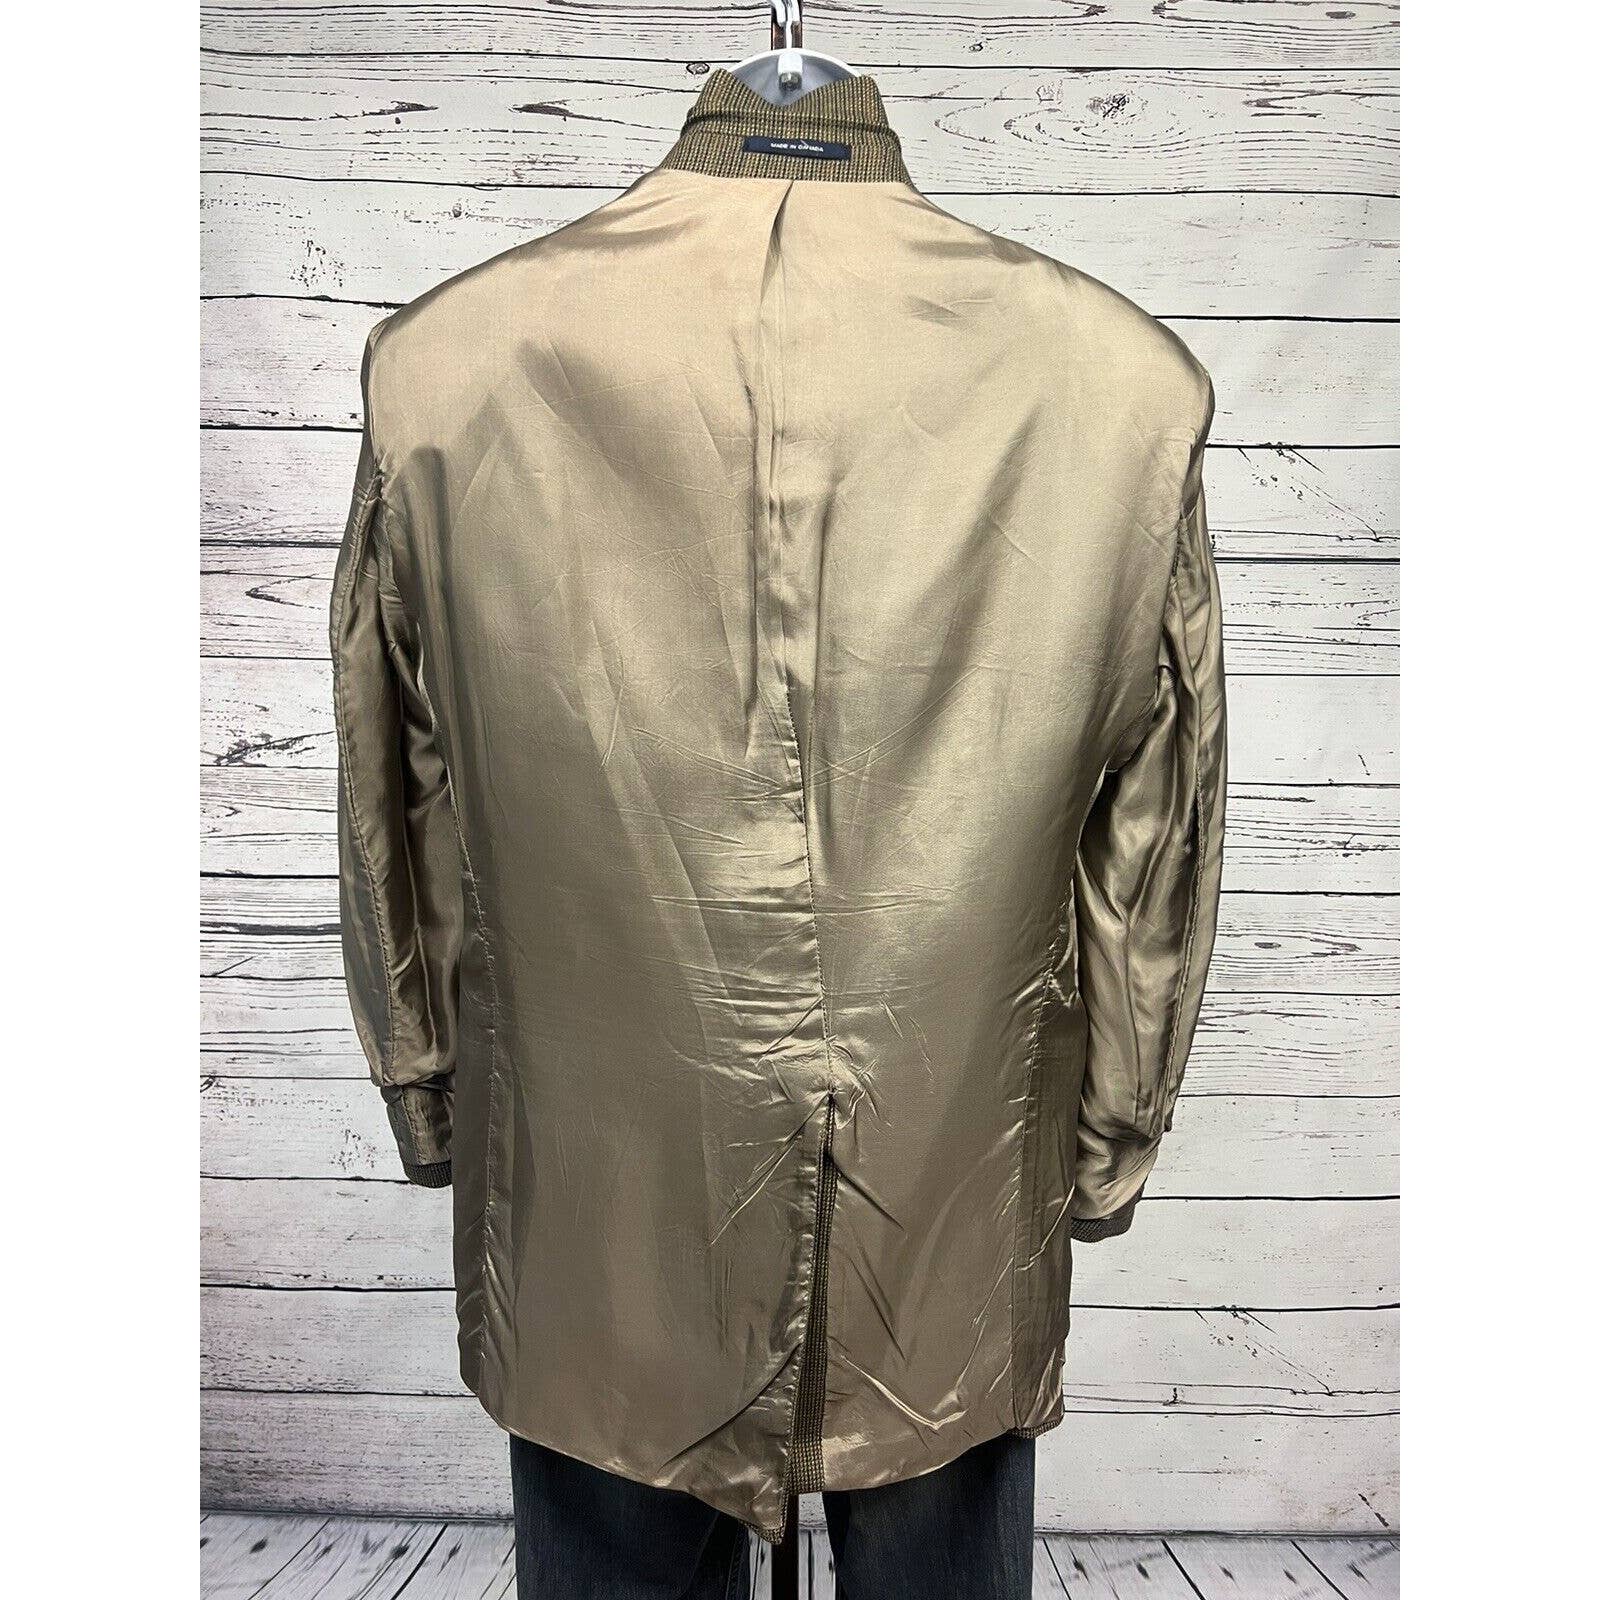 Ralph Lauren 2 Button Sport Coat 40R Lambswool Jacket Blazer Brown Check Vintage